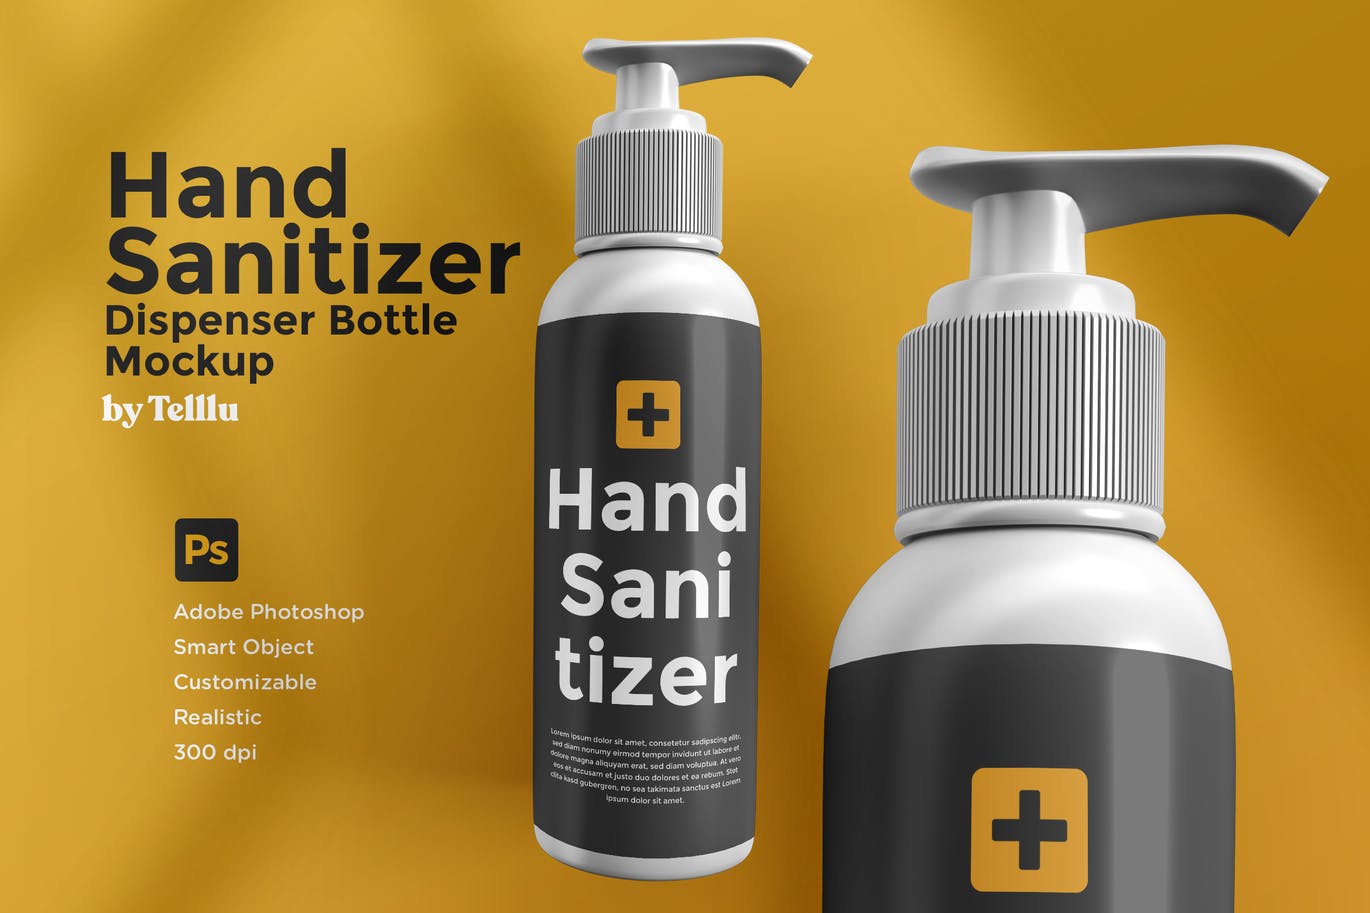 A hand sanitizer dispenser bottle mockup